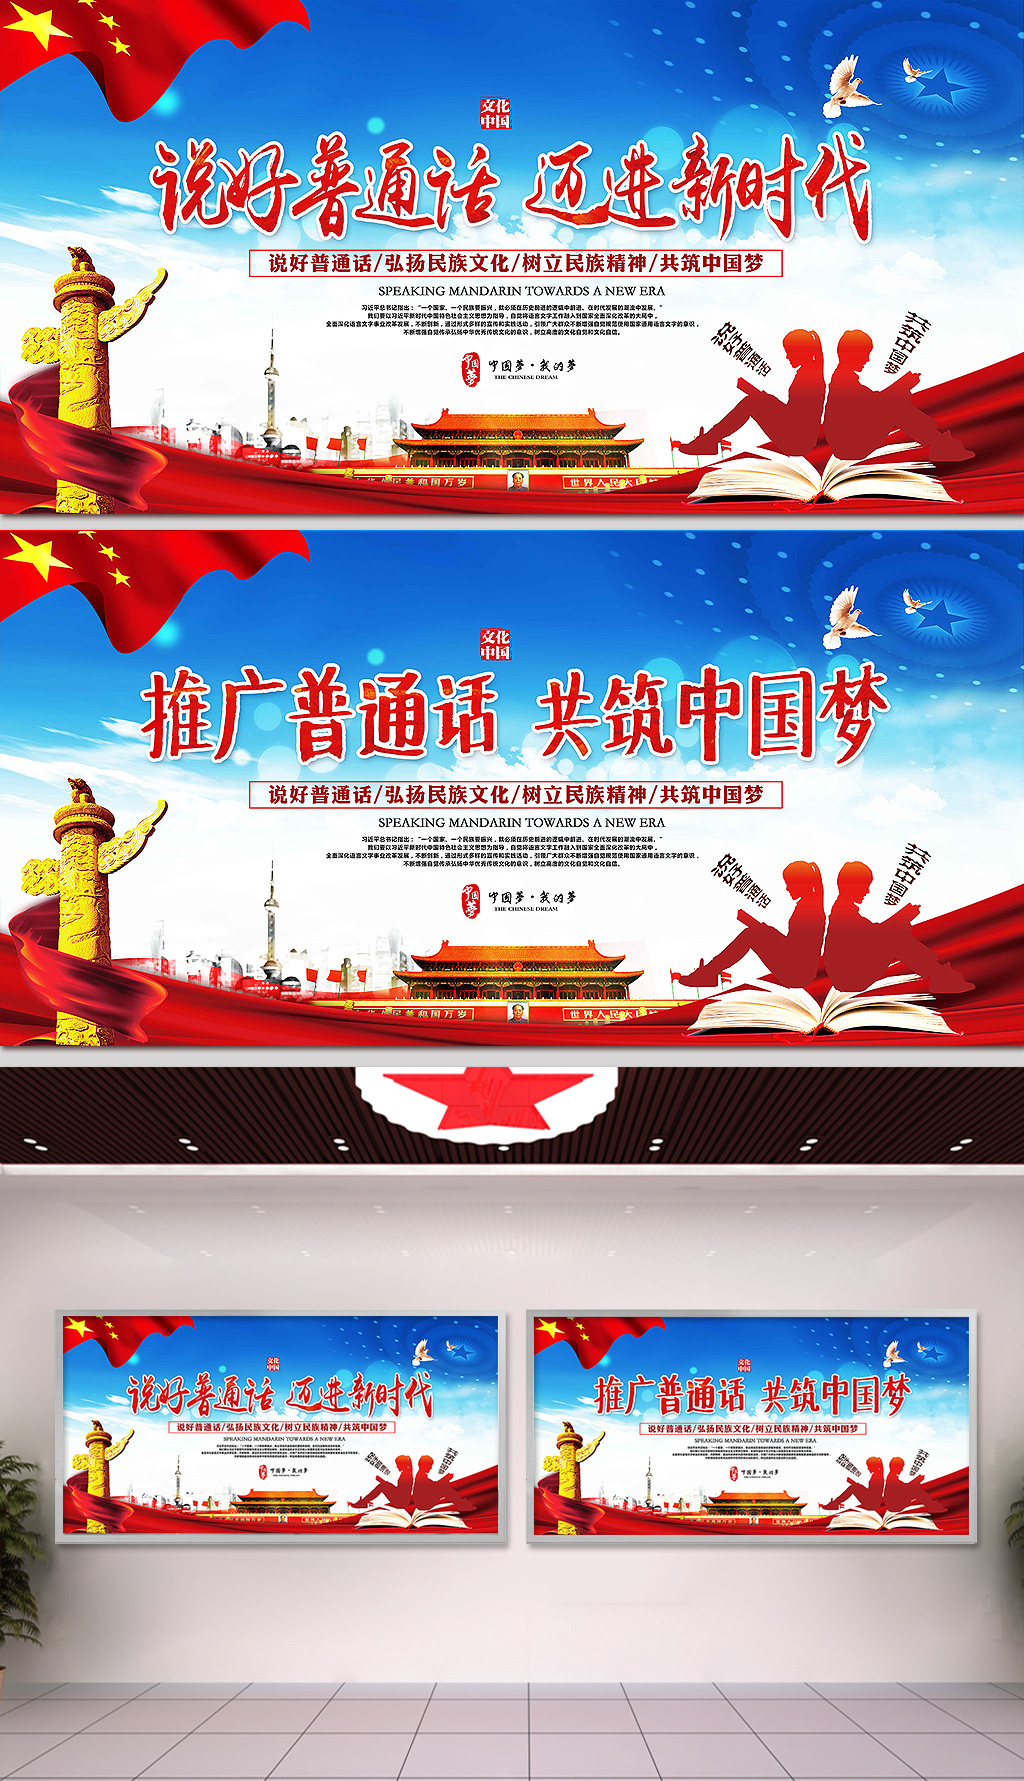 原创2018推广普通话宣传周宣传栏展板模板-版权可商用